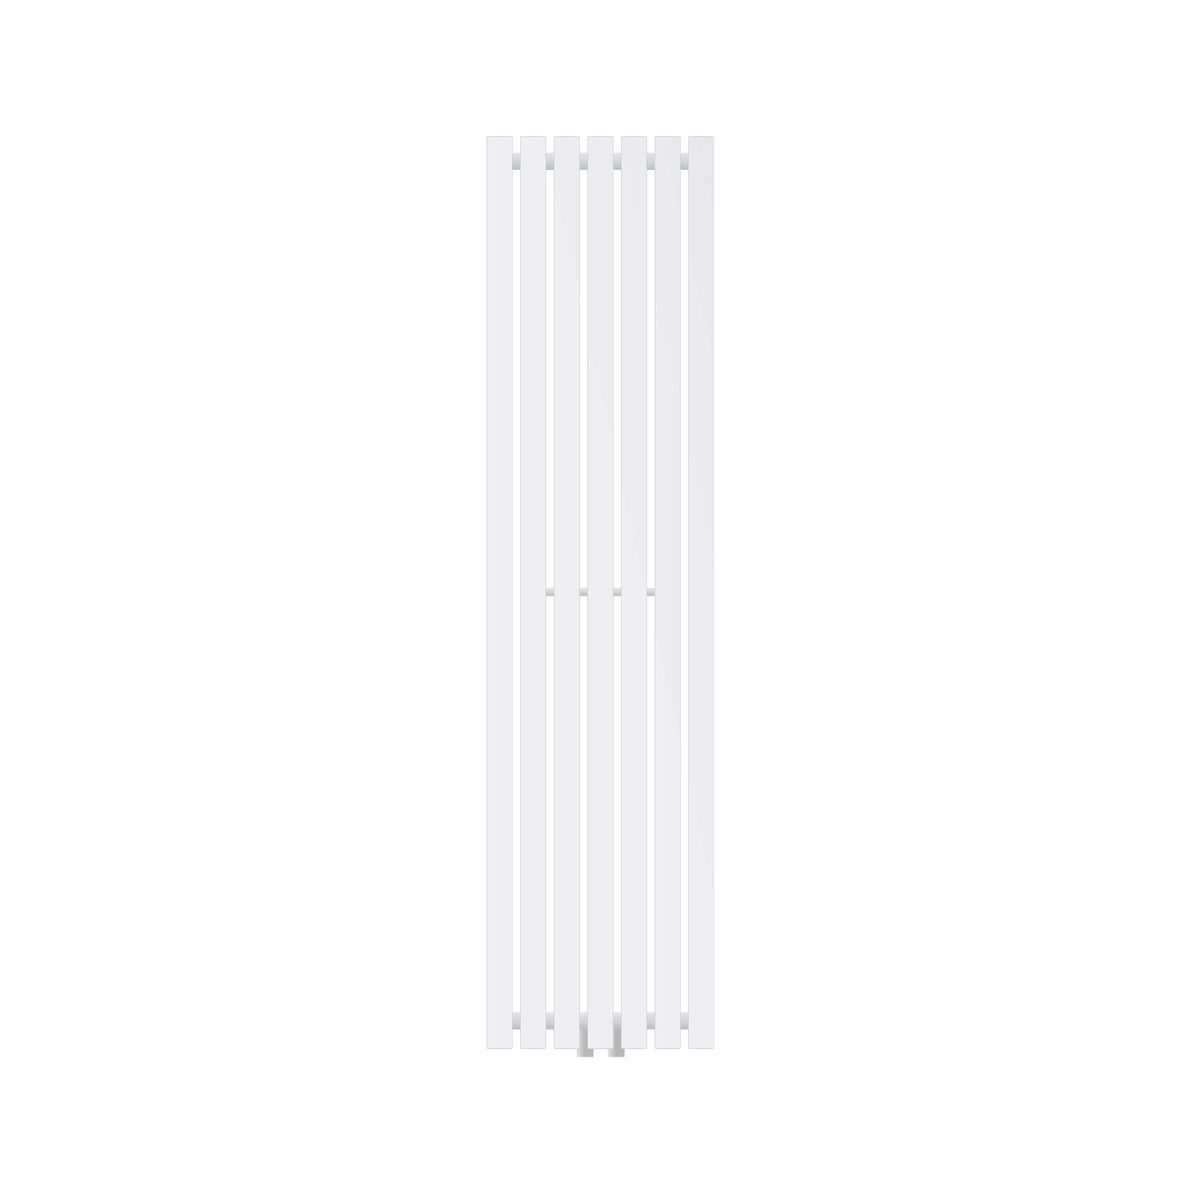 LuxeBath Designheizkörper Stella 1400 x 370 mm, Weiß, Paneelheizkörper Mittelanschluss, Einlagig, Flach, Vertikal, Badheizkörper Röhrenheizkörper Flachheizkörper Badezimmer Heizung Bad Wandheizung